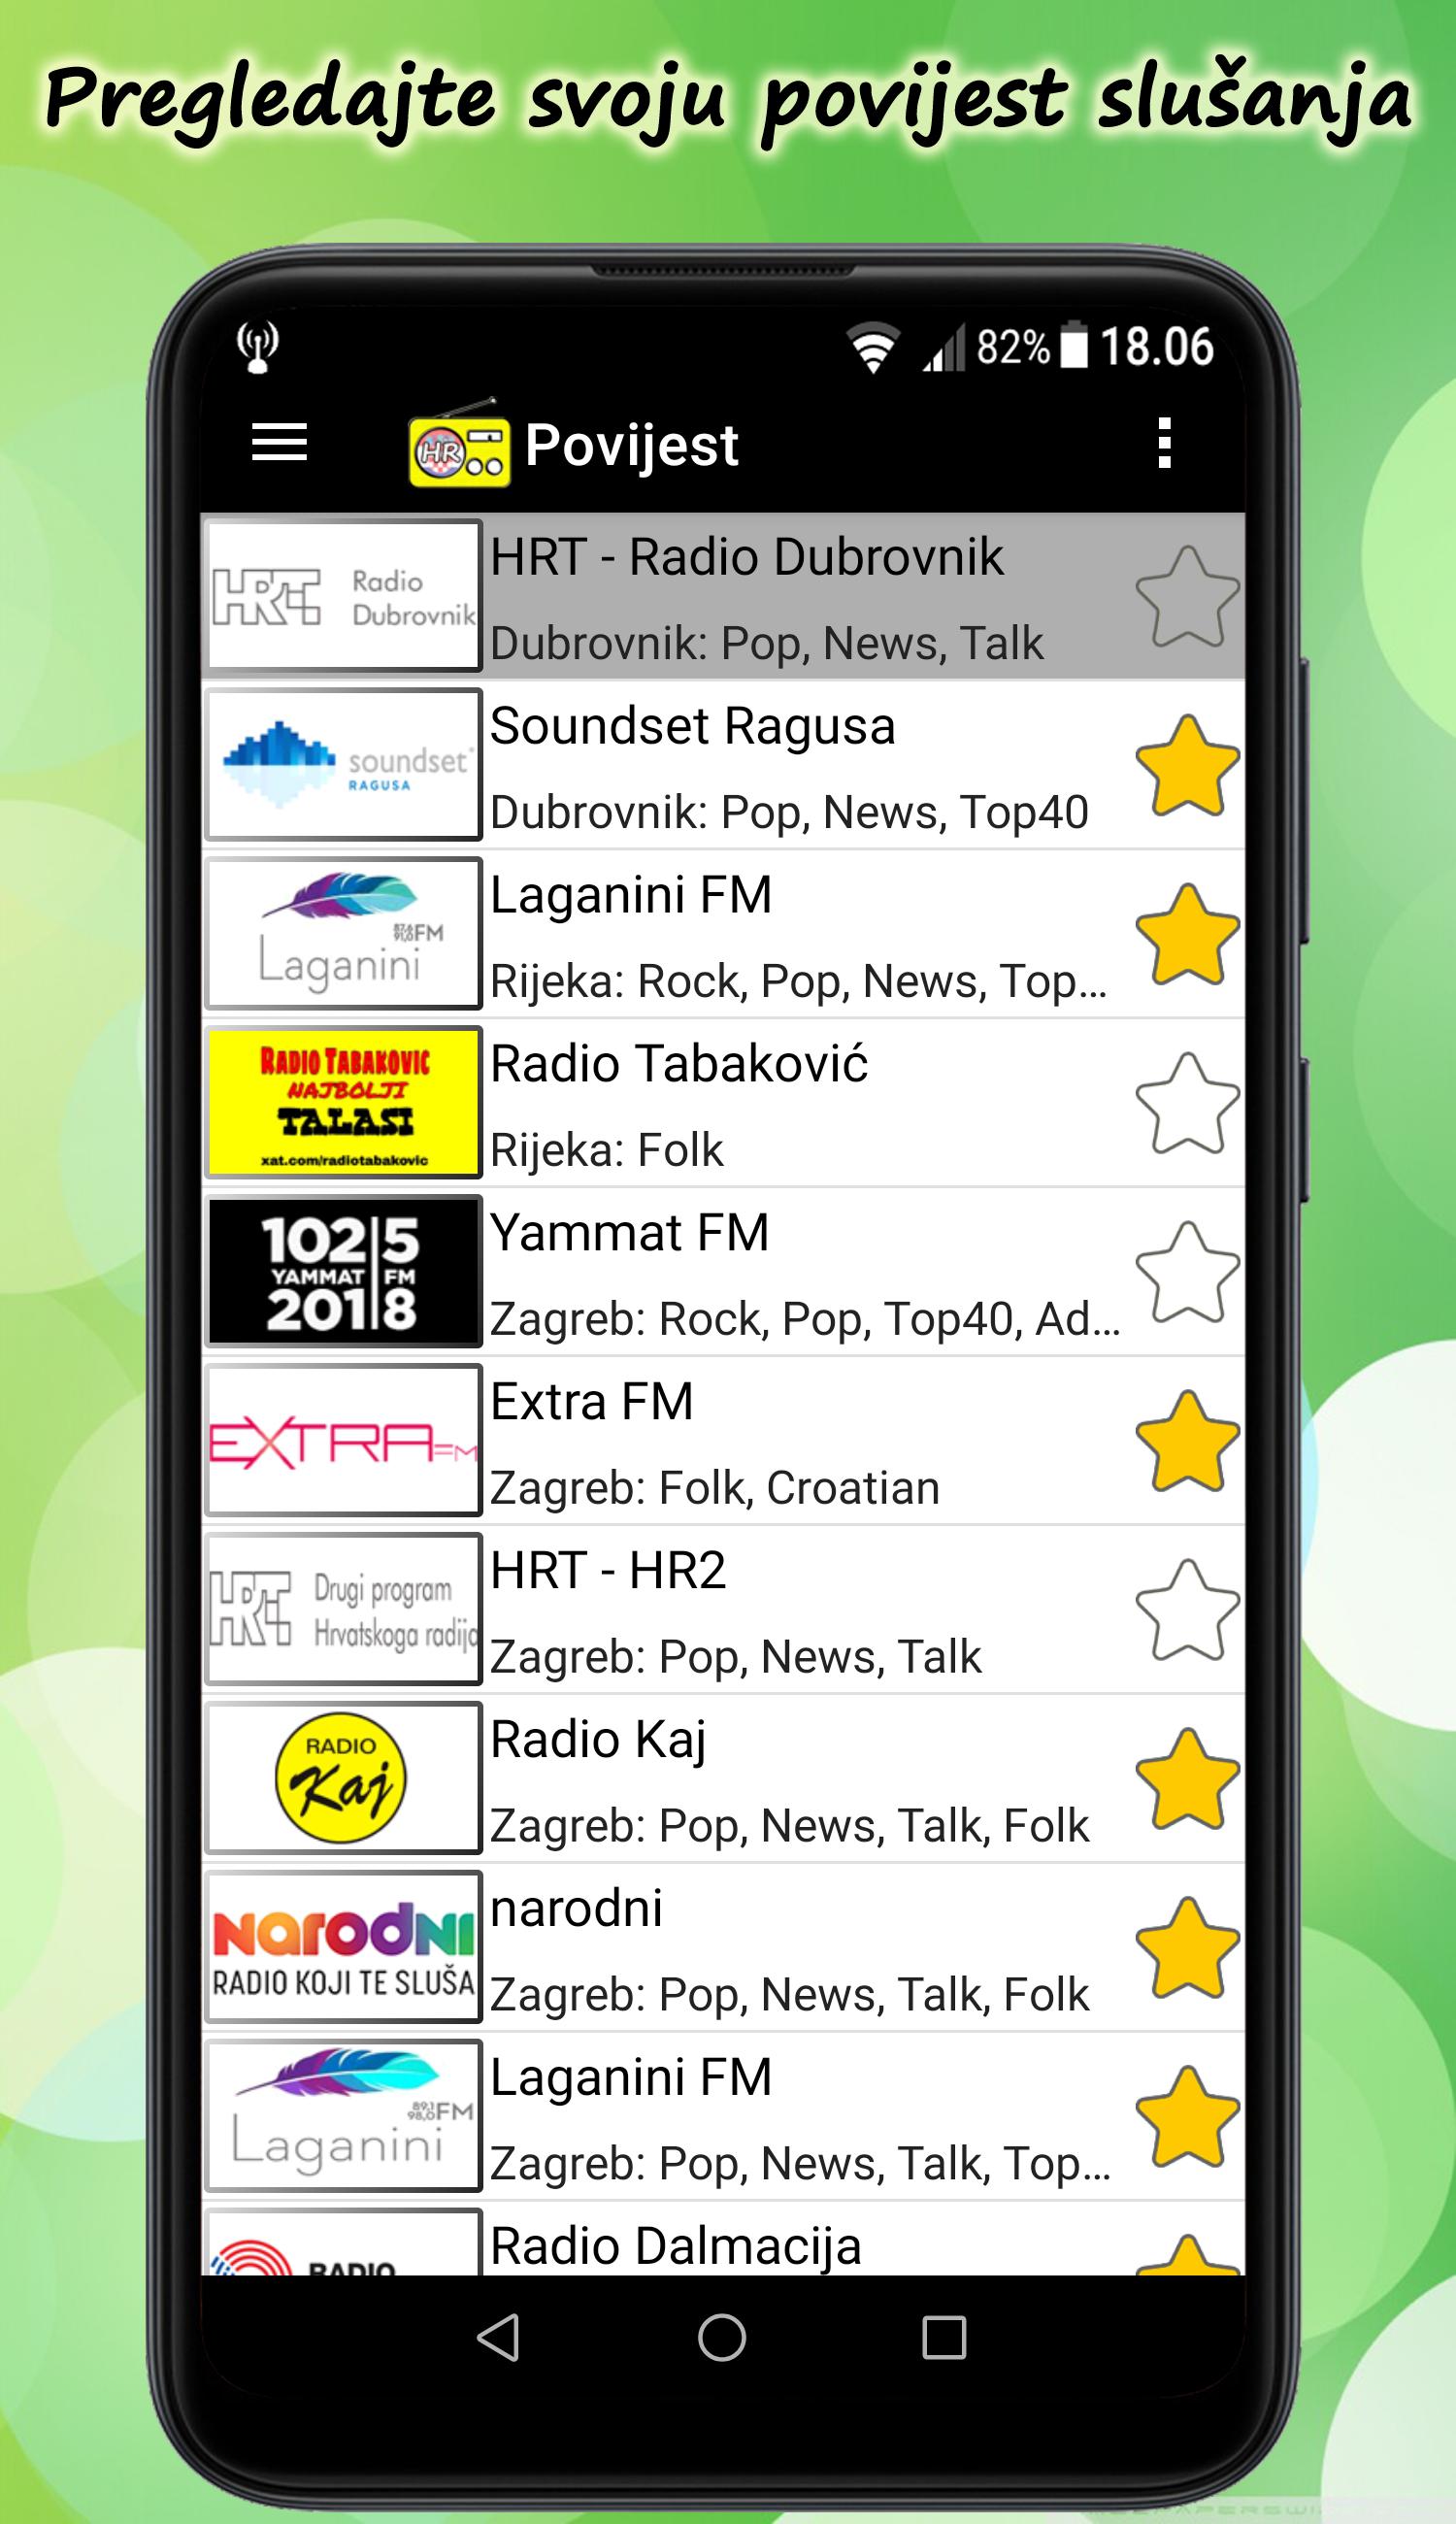 Radio Hrvatska FM Online for Android - APK Download